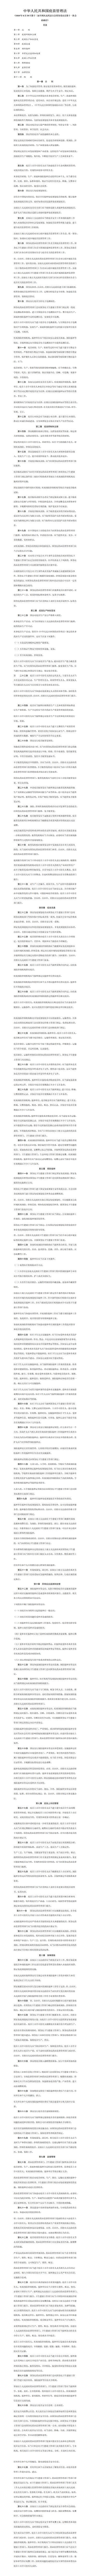 中华人民共和国疫苗管理法.png